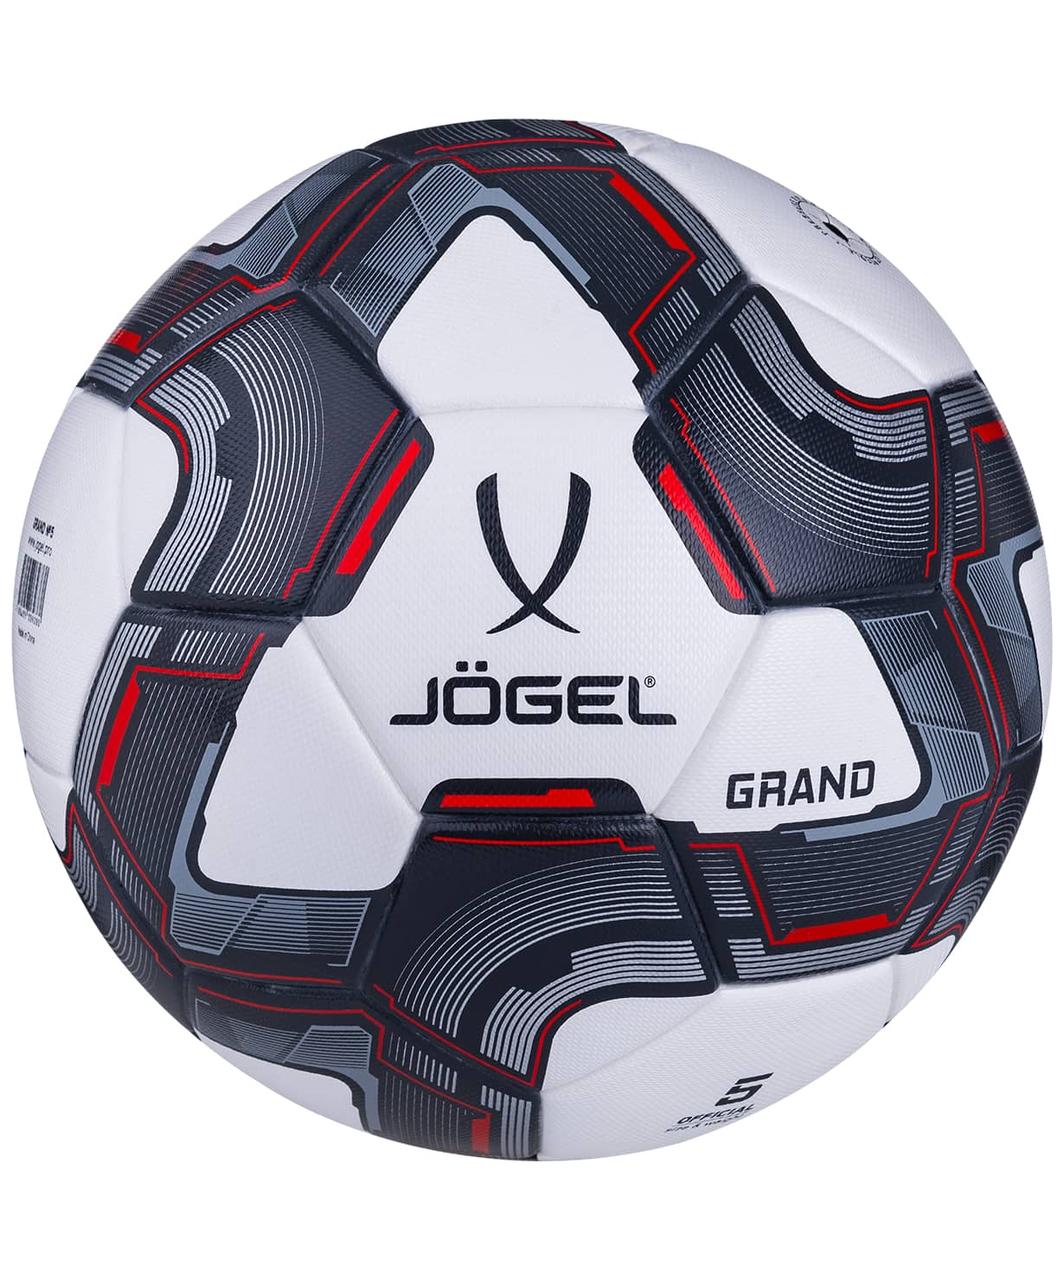 Мяч футбольный №5 Jogel Grand №5 BC20 16943, фото 1